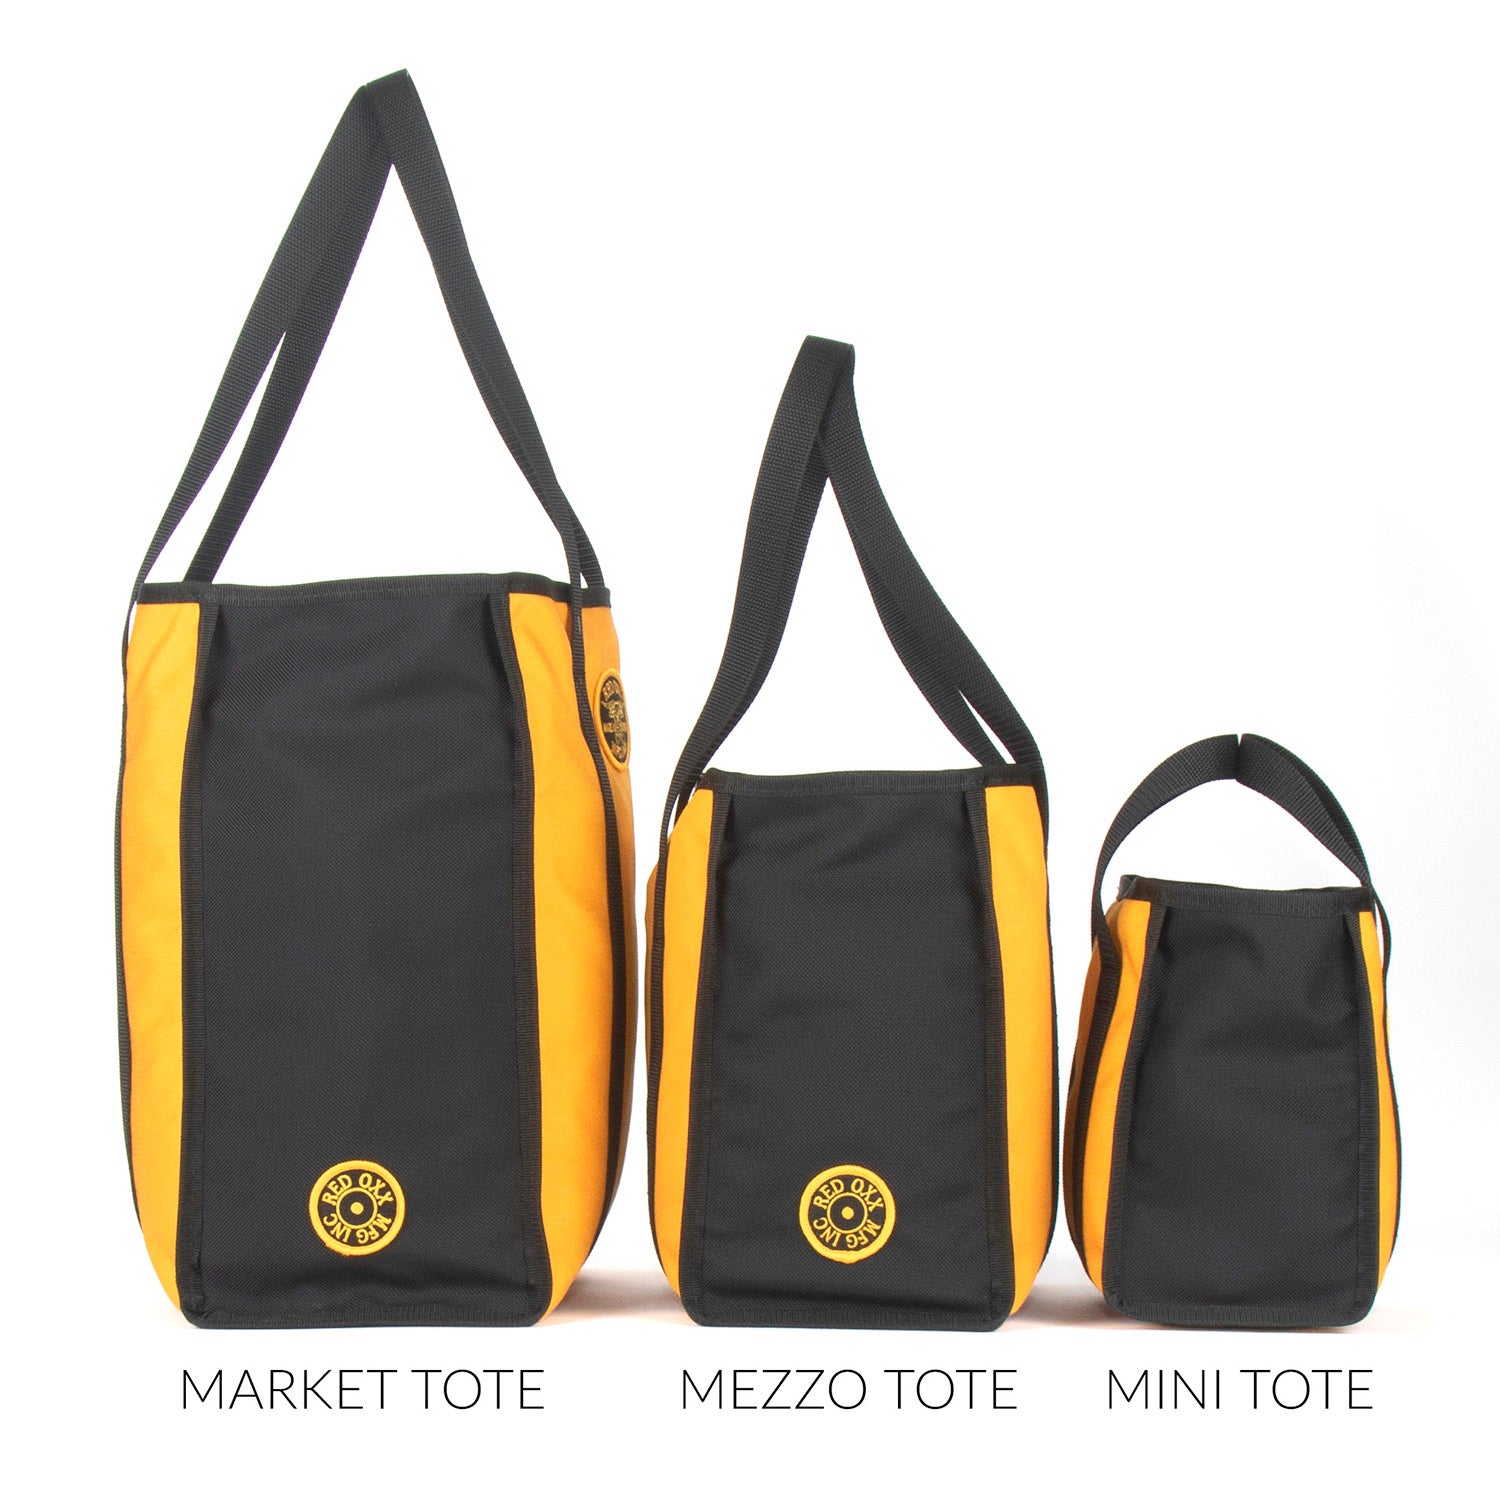 Tote bags comparison side view from left to right. Market Tote, Mezzo Tote, Mini Tote.